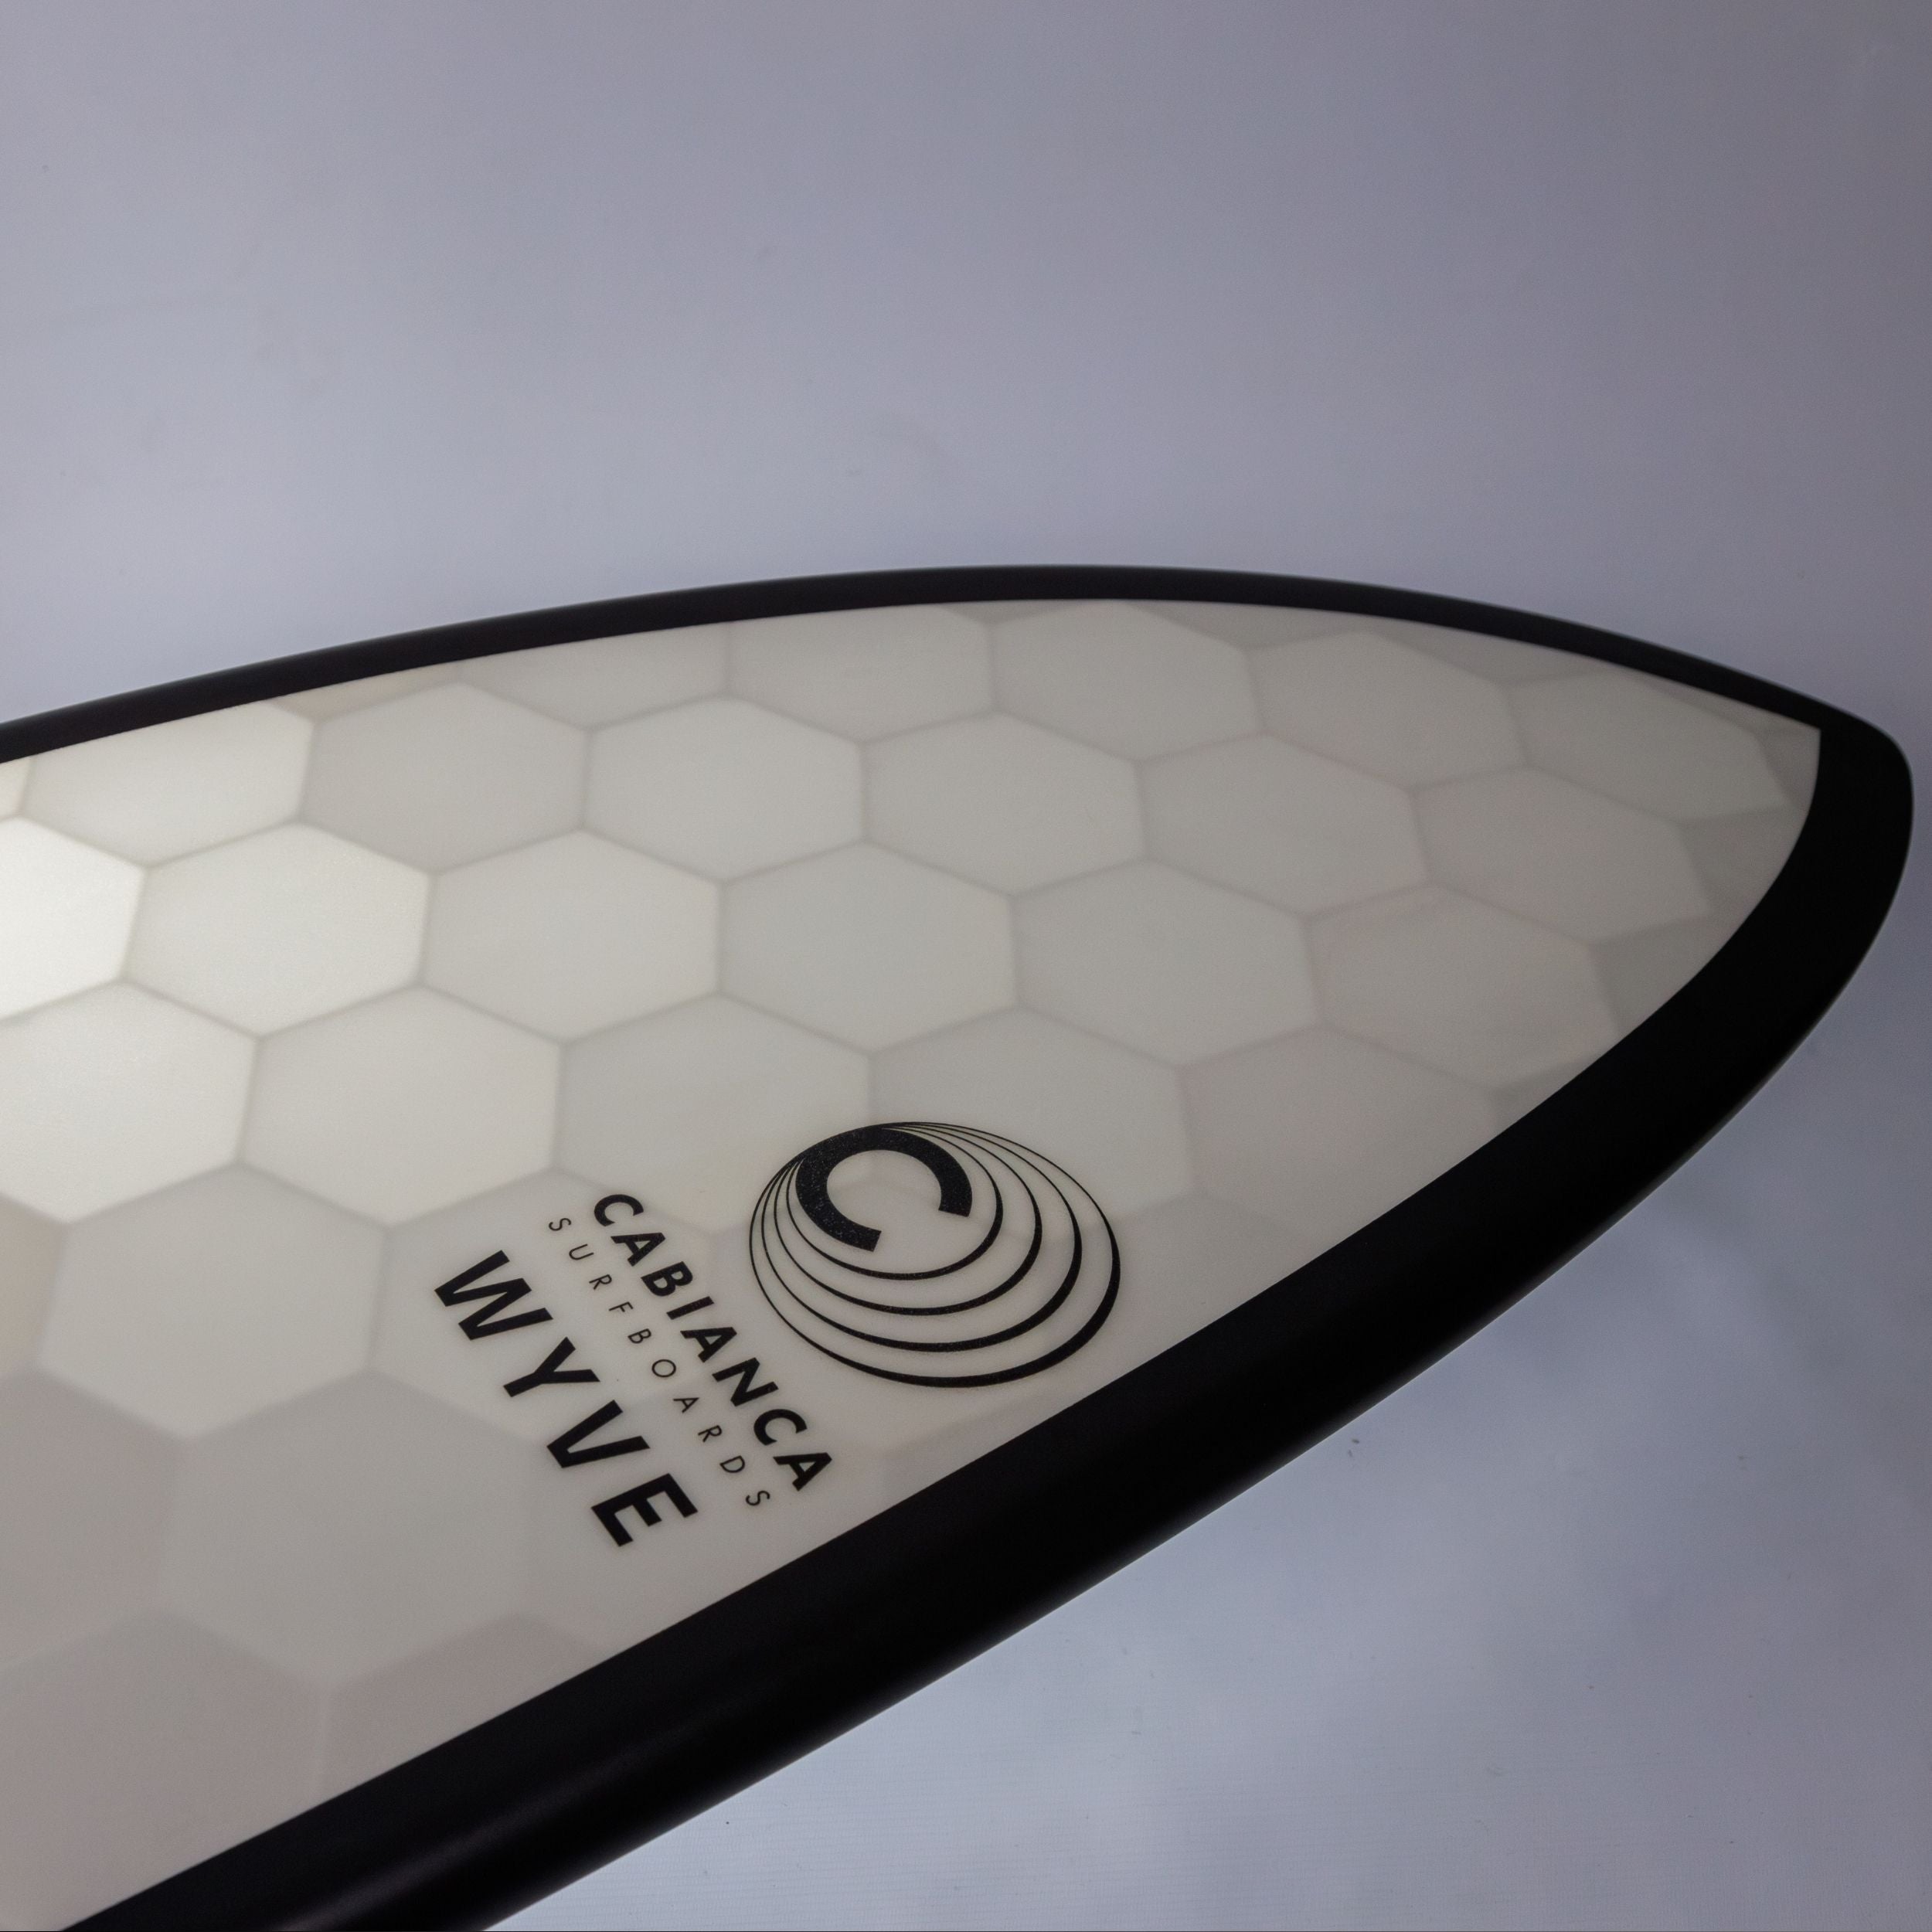 Nose d'une planche de surf Wyve made in France et eco conçu